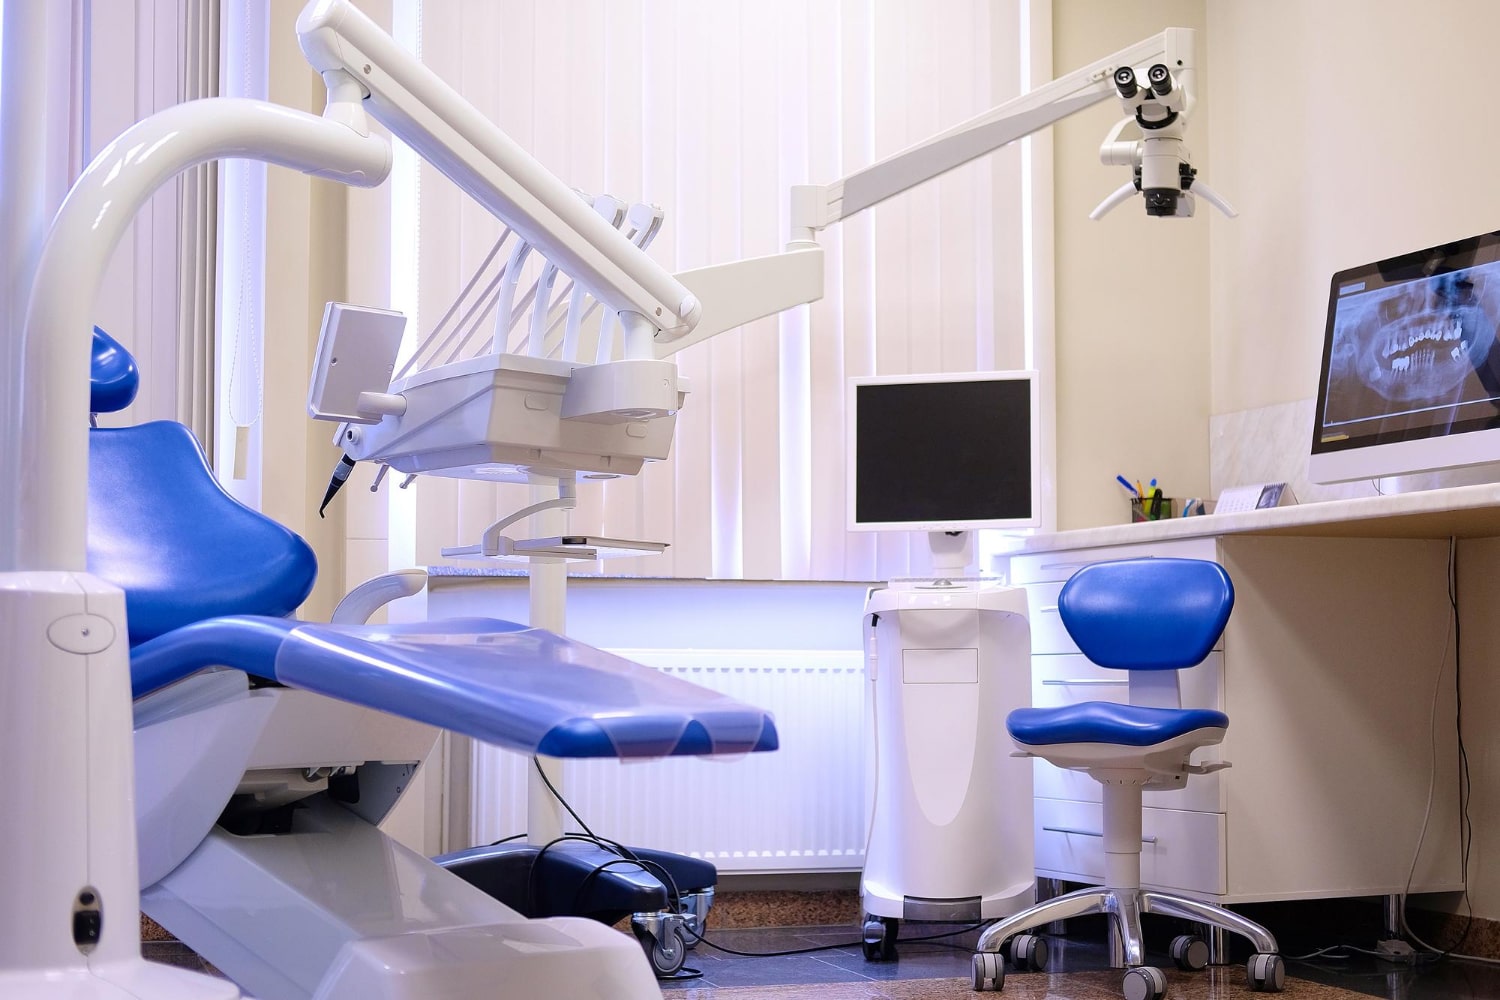 Los servicios que debe ofrecer una clínica dental de calidad